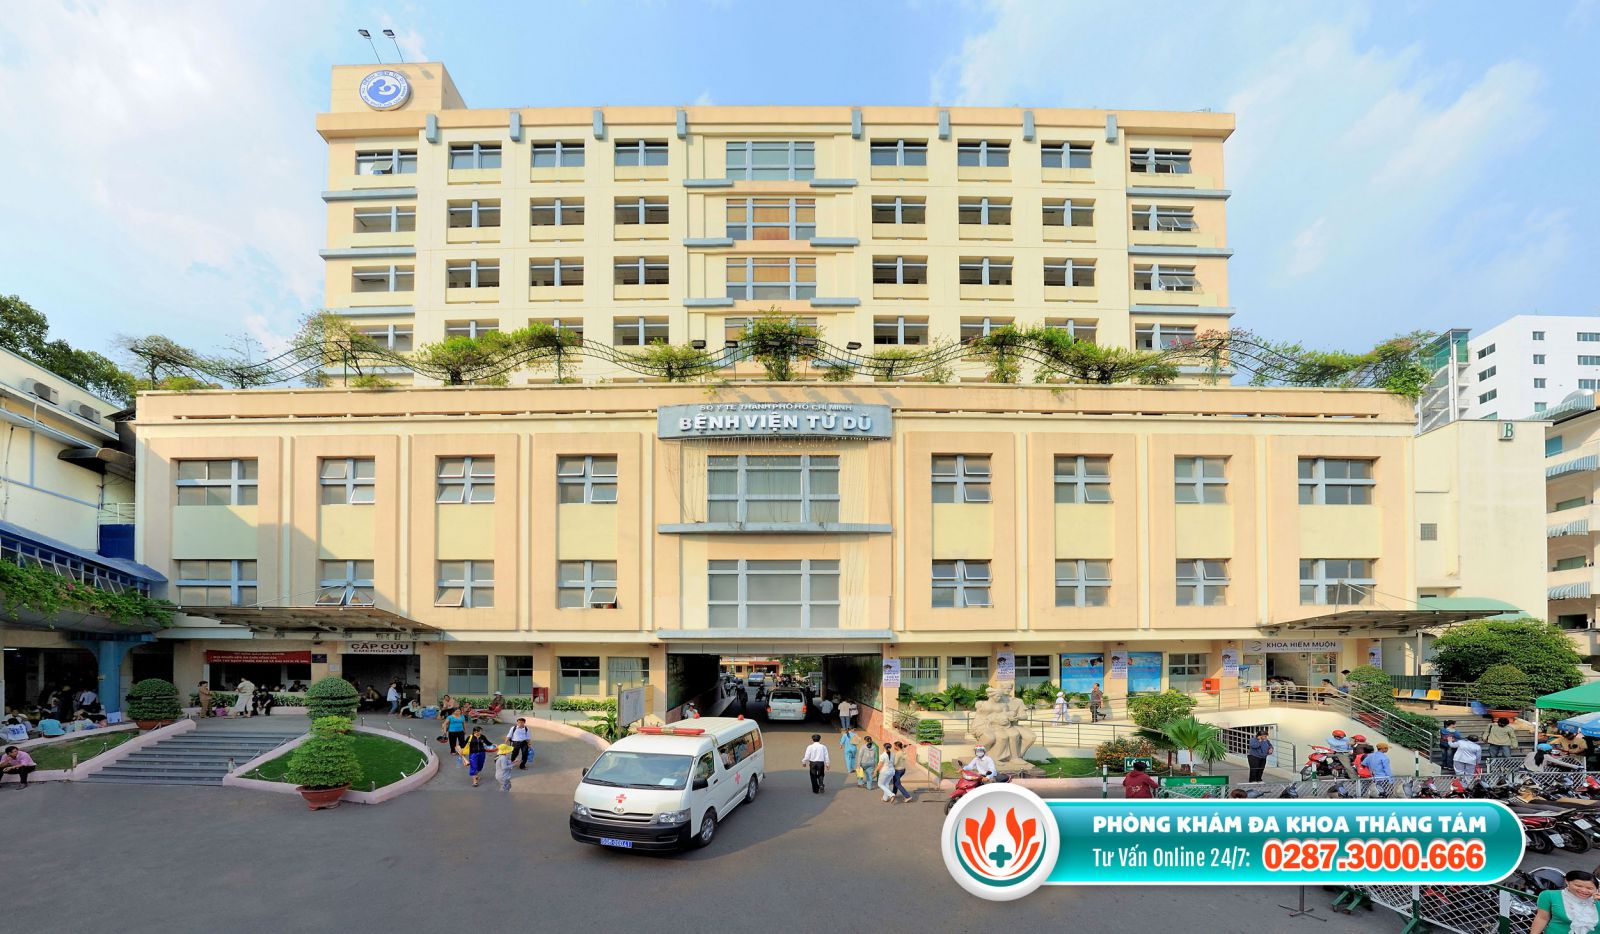 Bệnh viện Từ Dũ là cơ sở phá thai chất lượng tại TPHCM